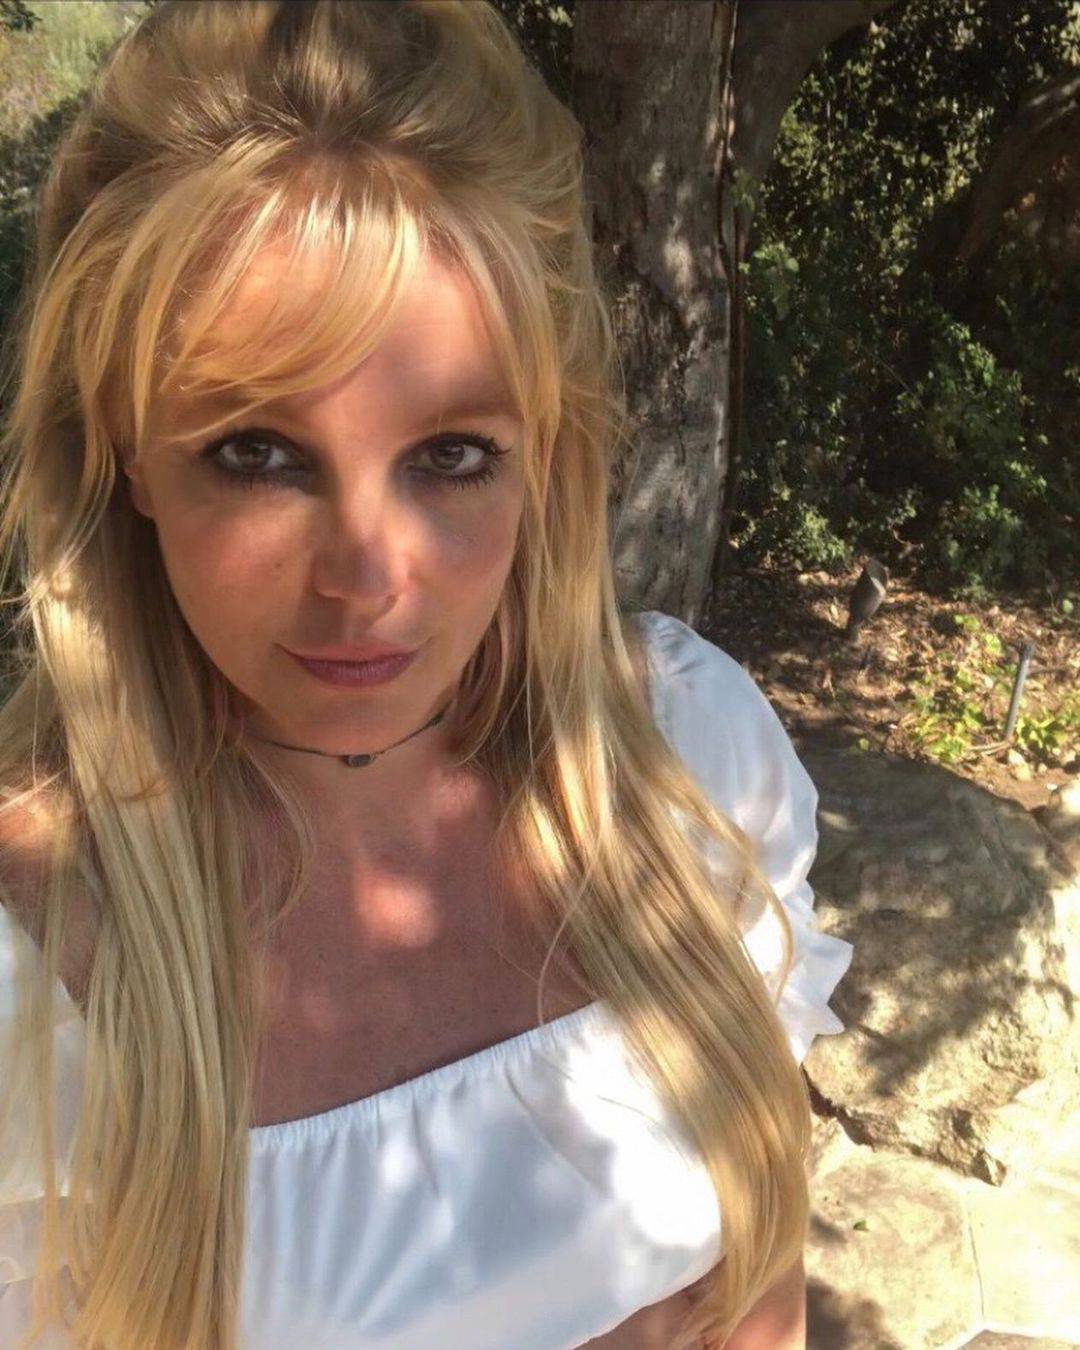 Britney odbija nastupe, ugrozila je bogatstvo od 369 mil. kuna